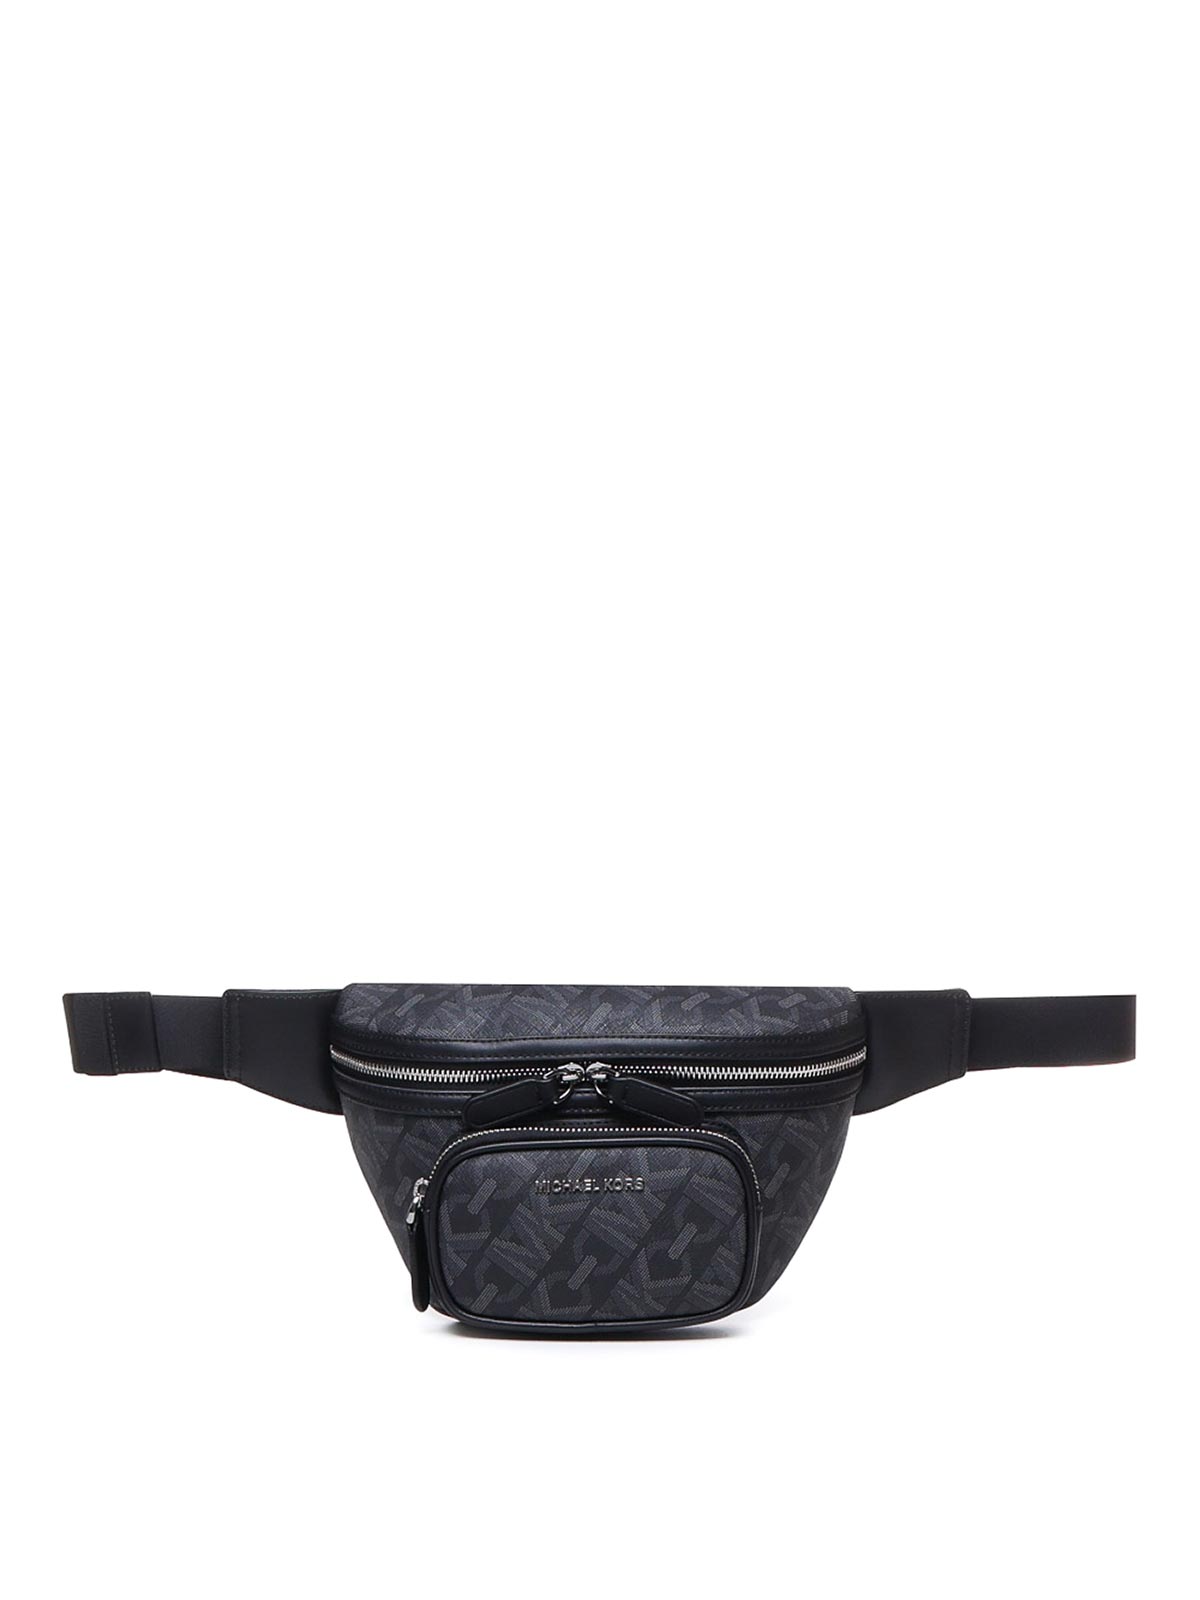 Michael Kor Cooper Large Utility Belt Waist Bag Fanny Packs MK Admiral Pale  Blue - Michael Kors bag - | Fash Brands